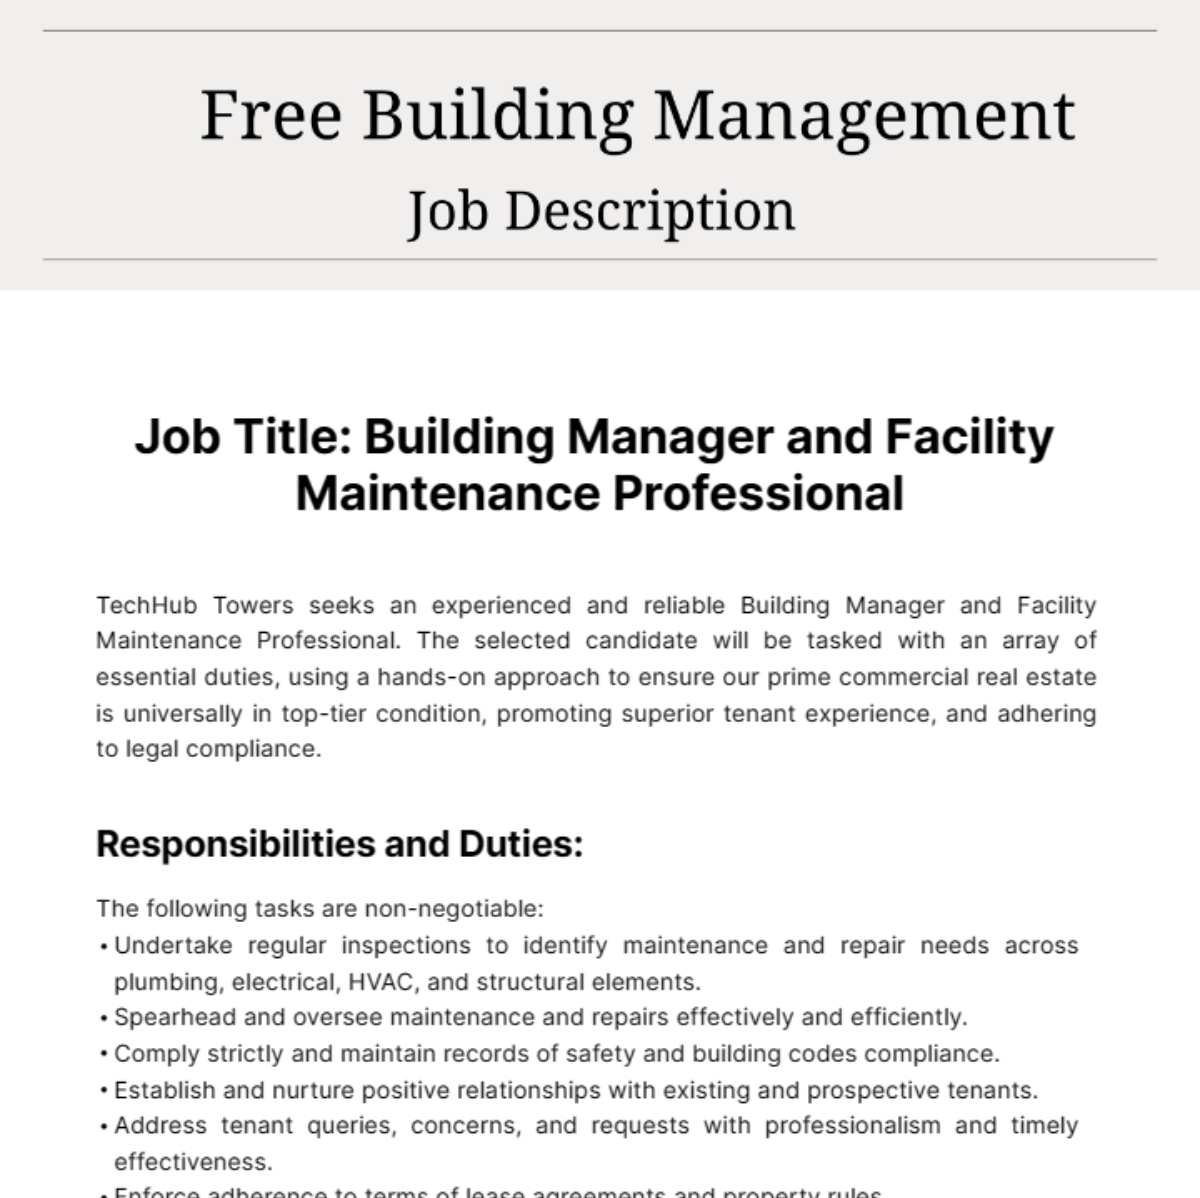 Free Building Management Job Description Template